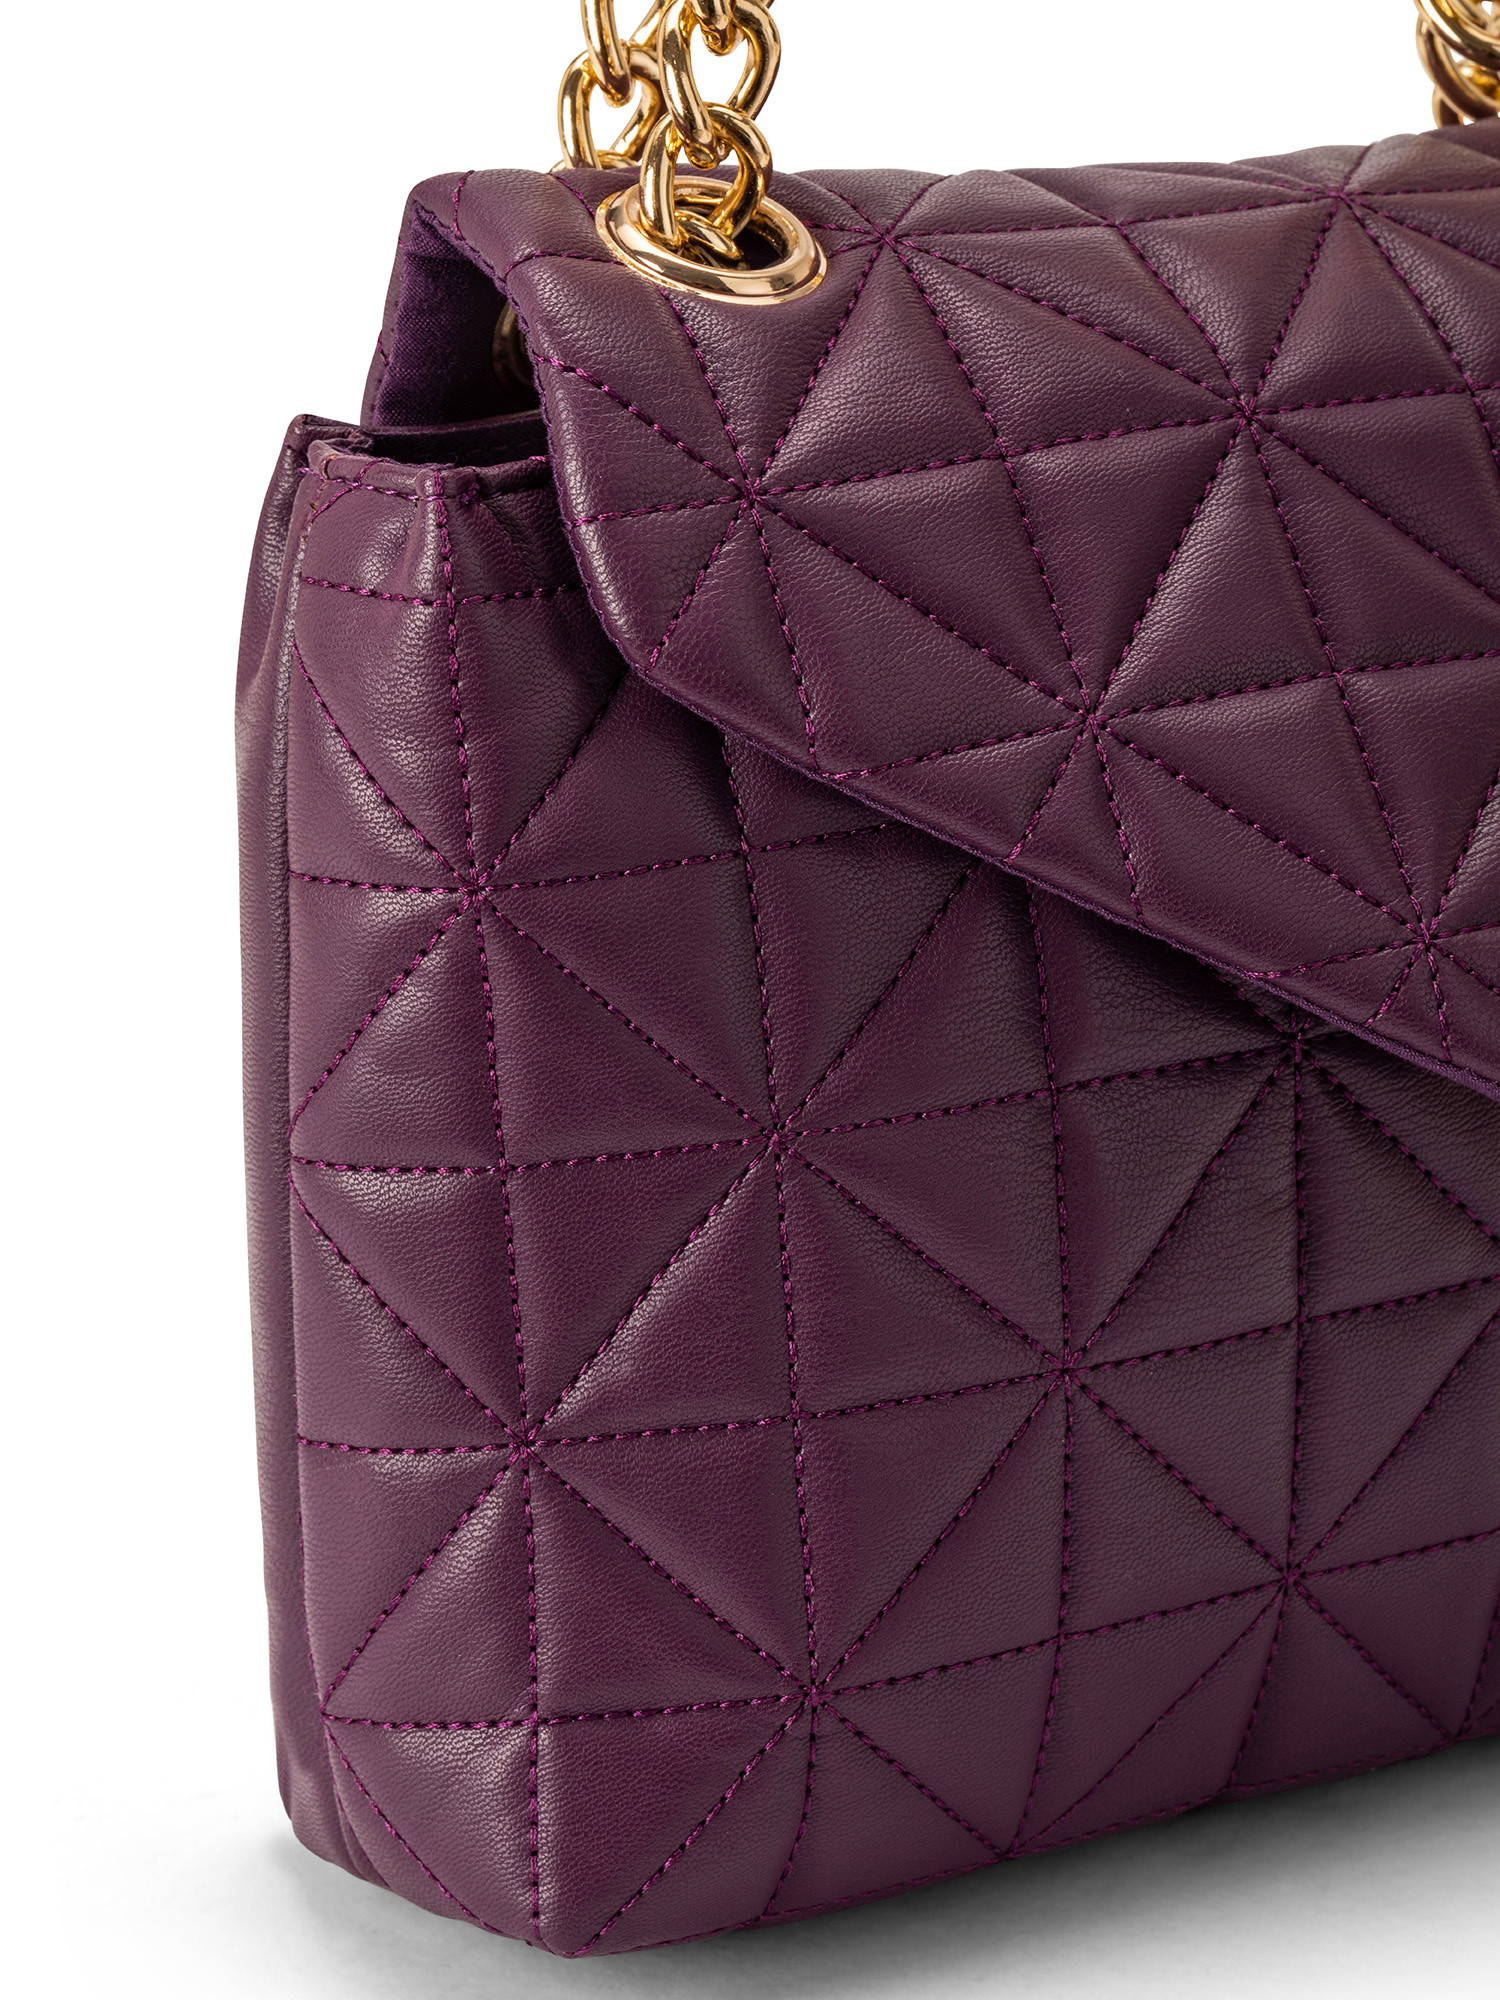 Koan - Shoulder bag with motif, Purple, large image number 2